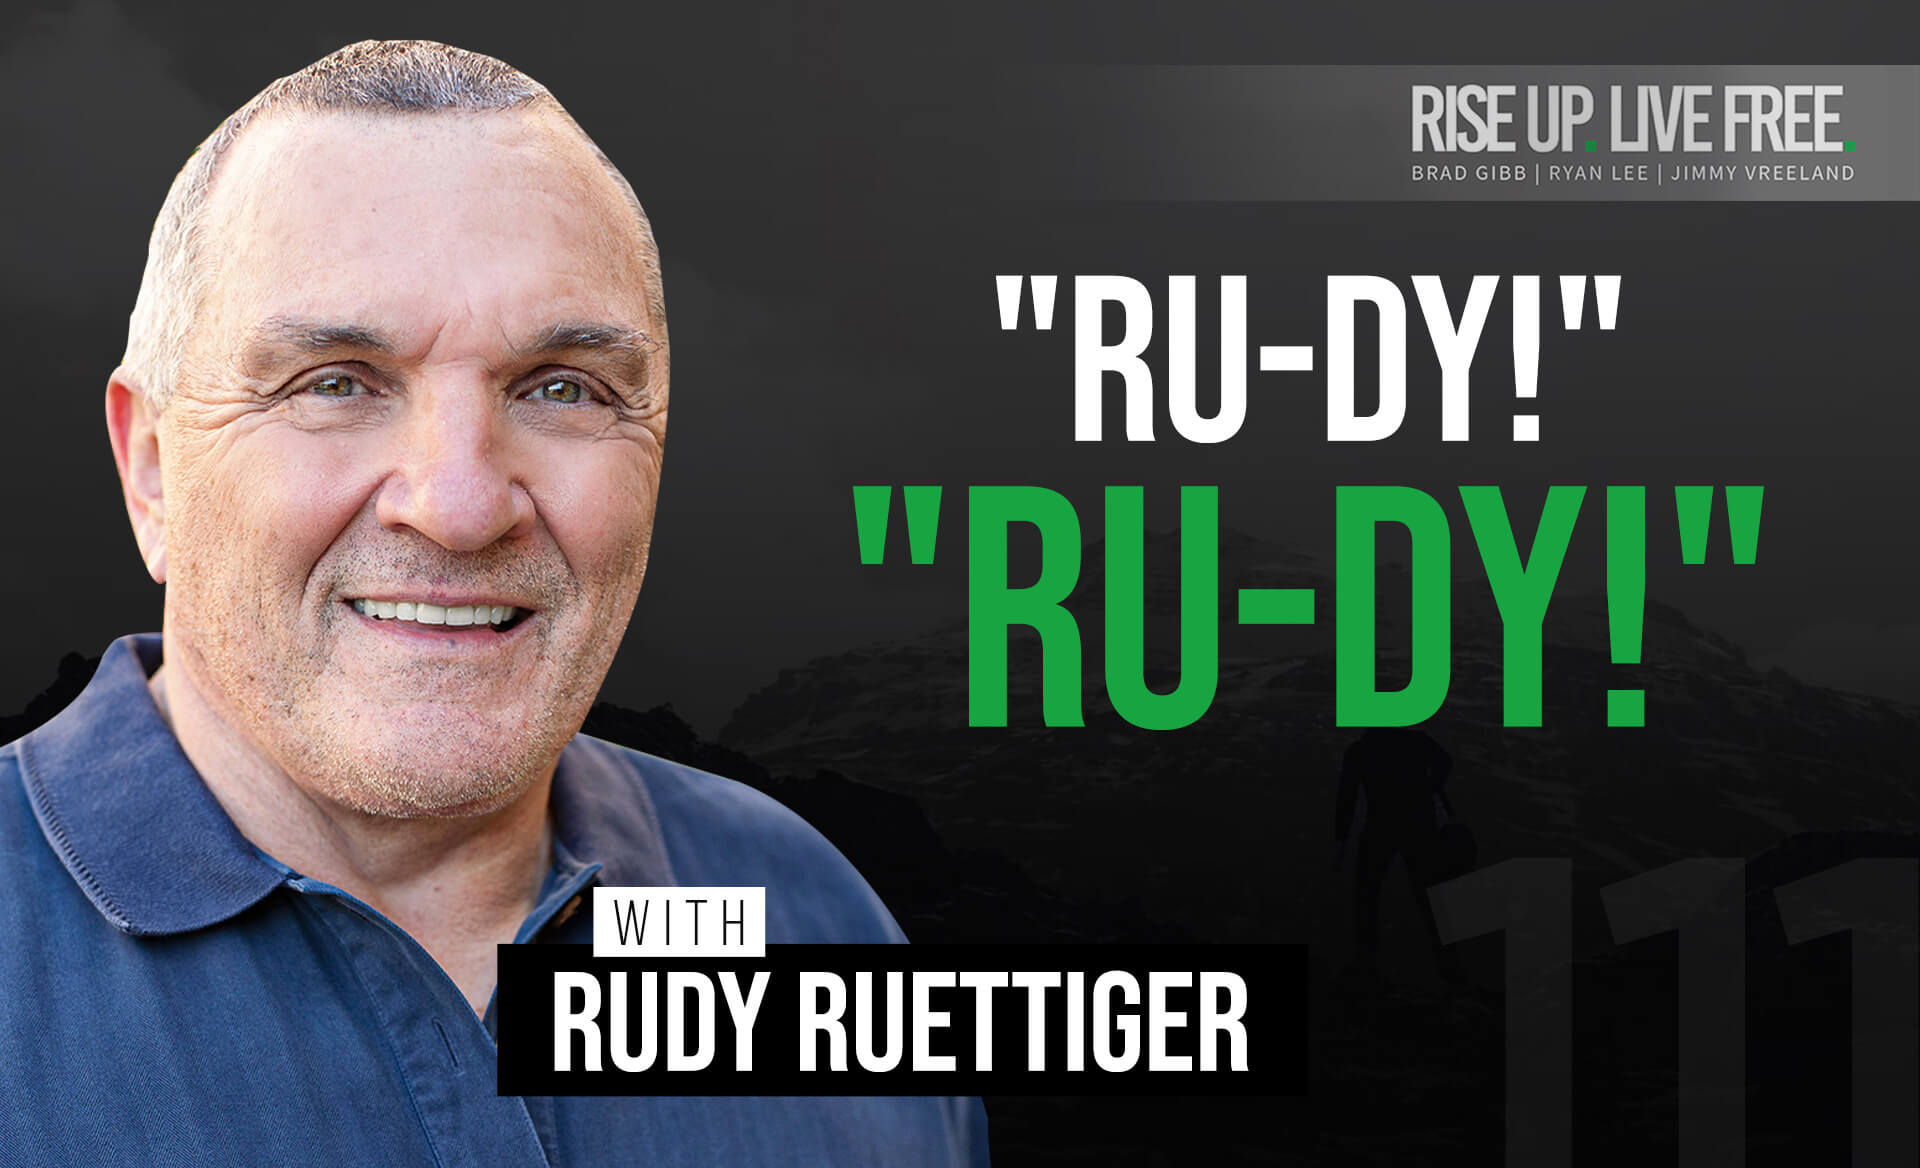 "RU-DY!" "RU-DY!" Jimmy & Ryan Interview Rudy Ruettiger